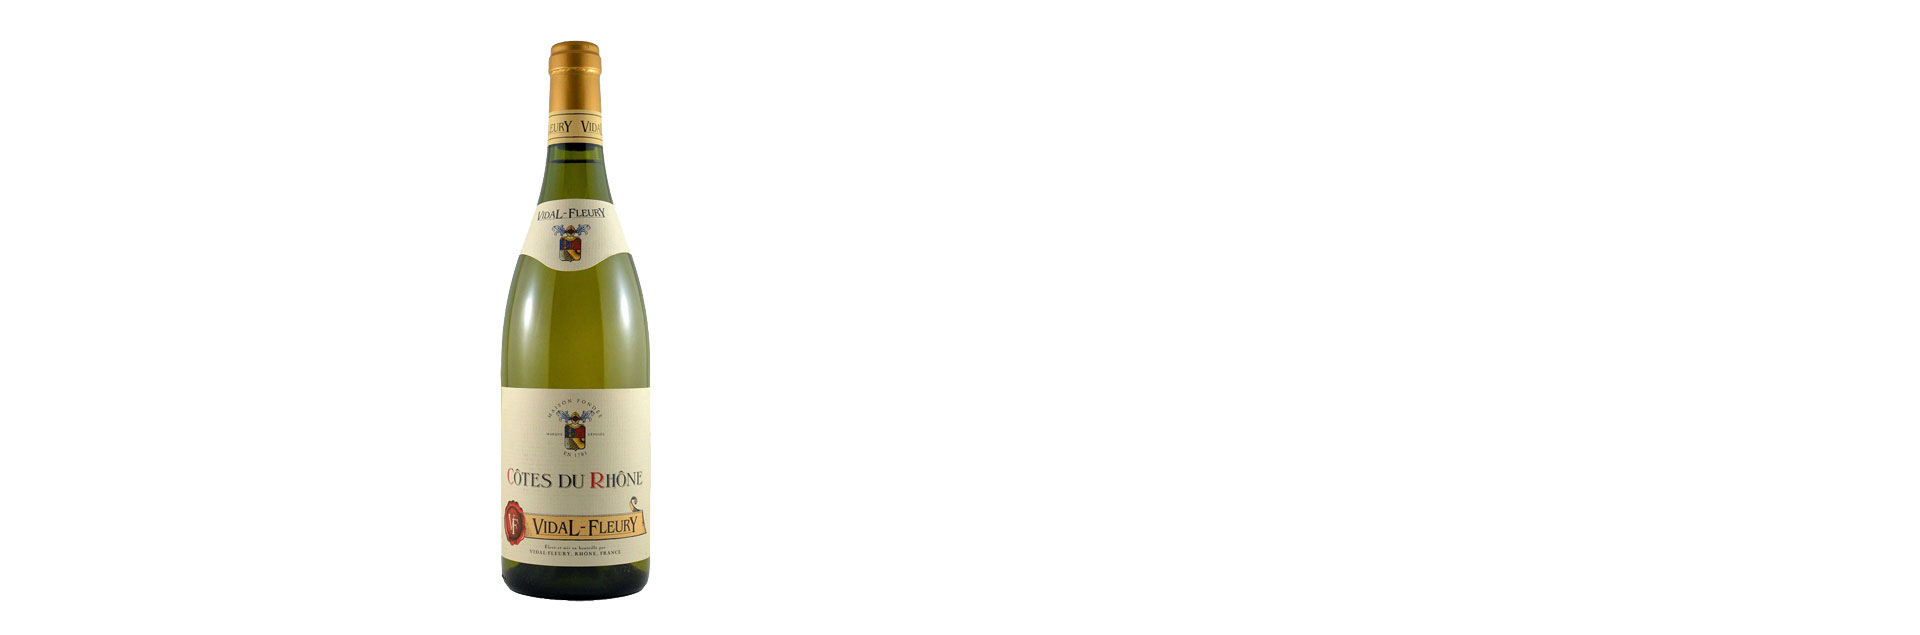 Rượu Vang Pháp Vidal Fleury Cotes Du Rhone Blanc 2017